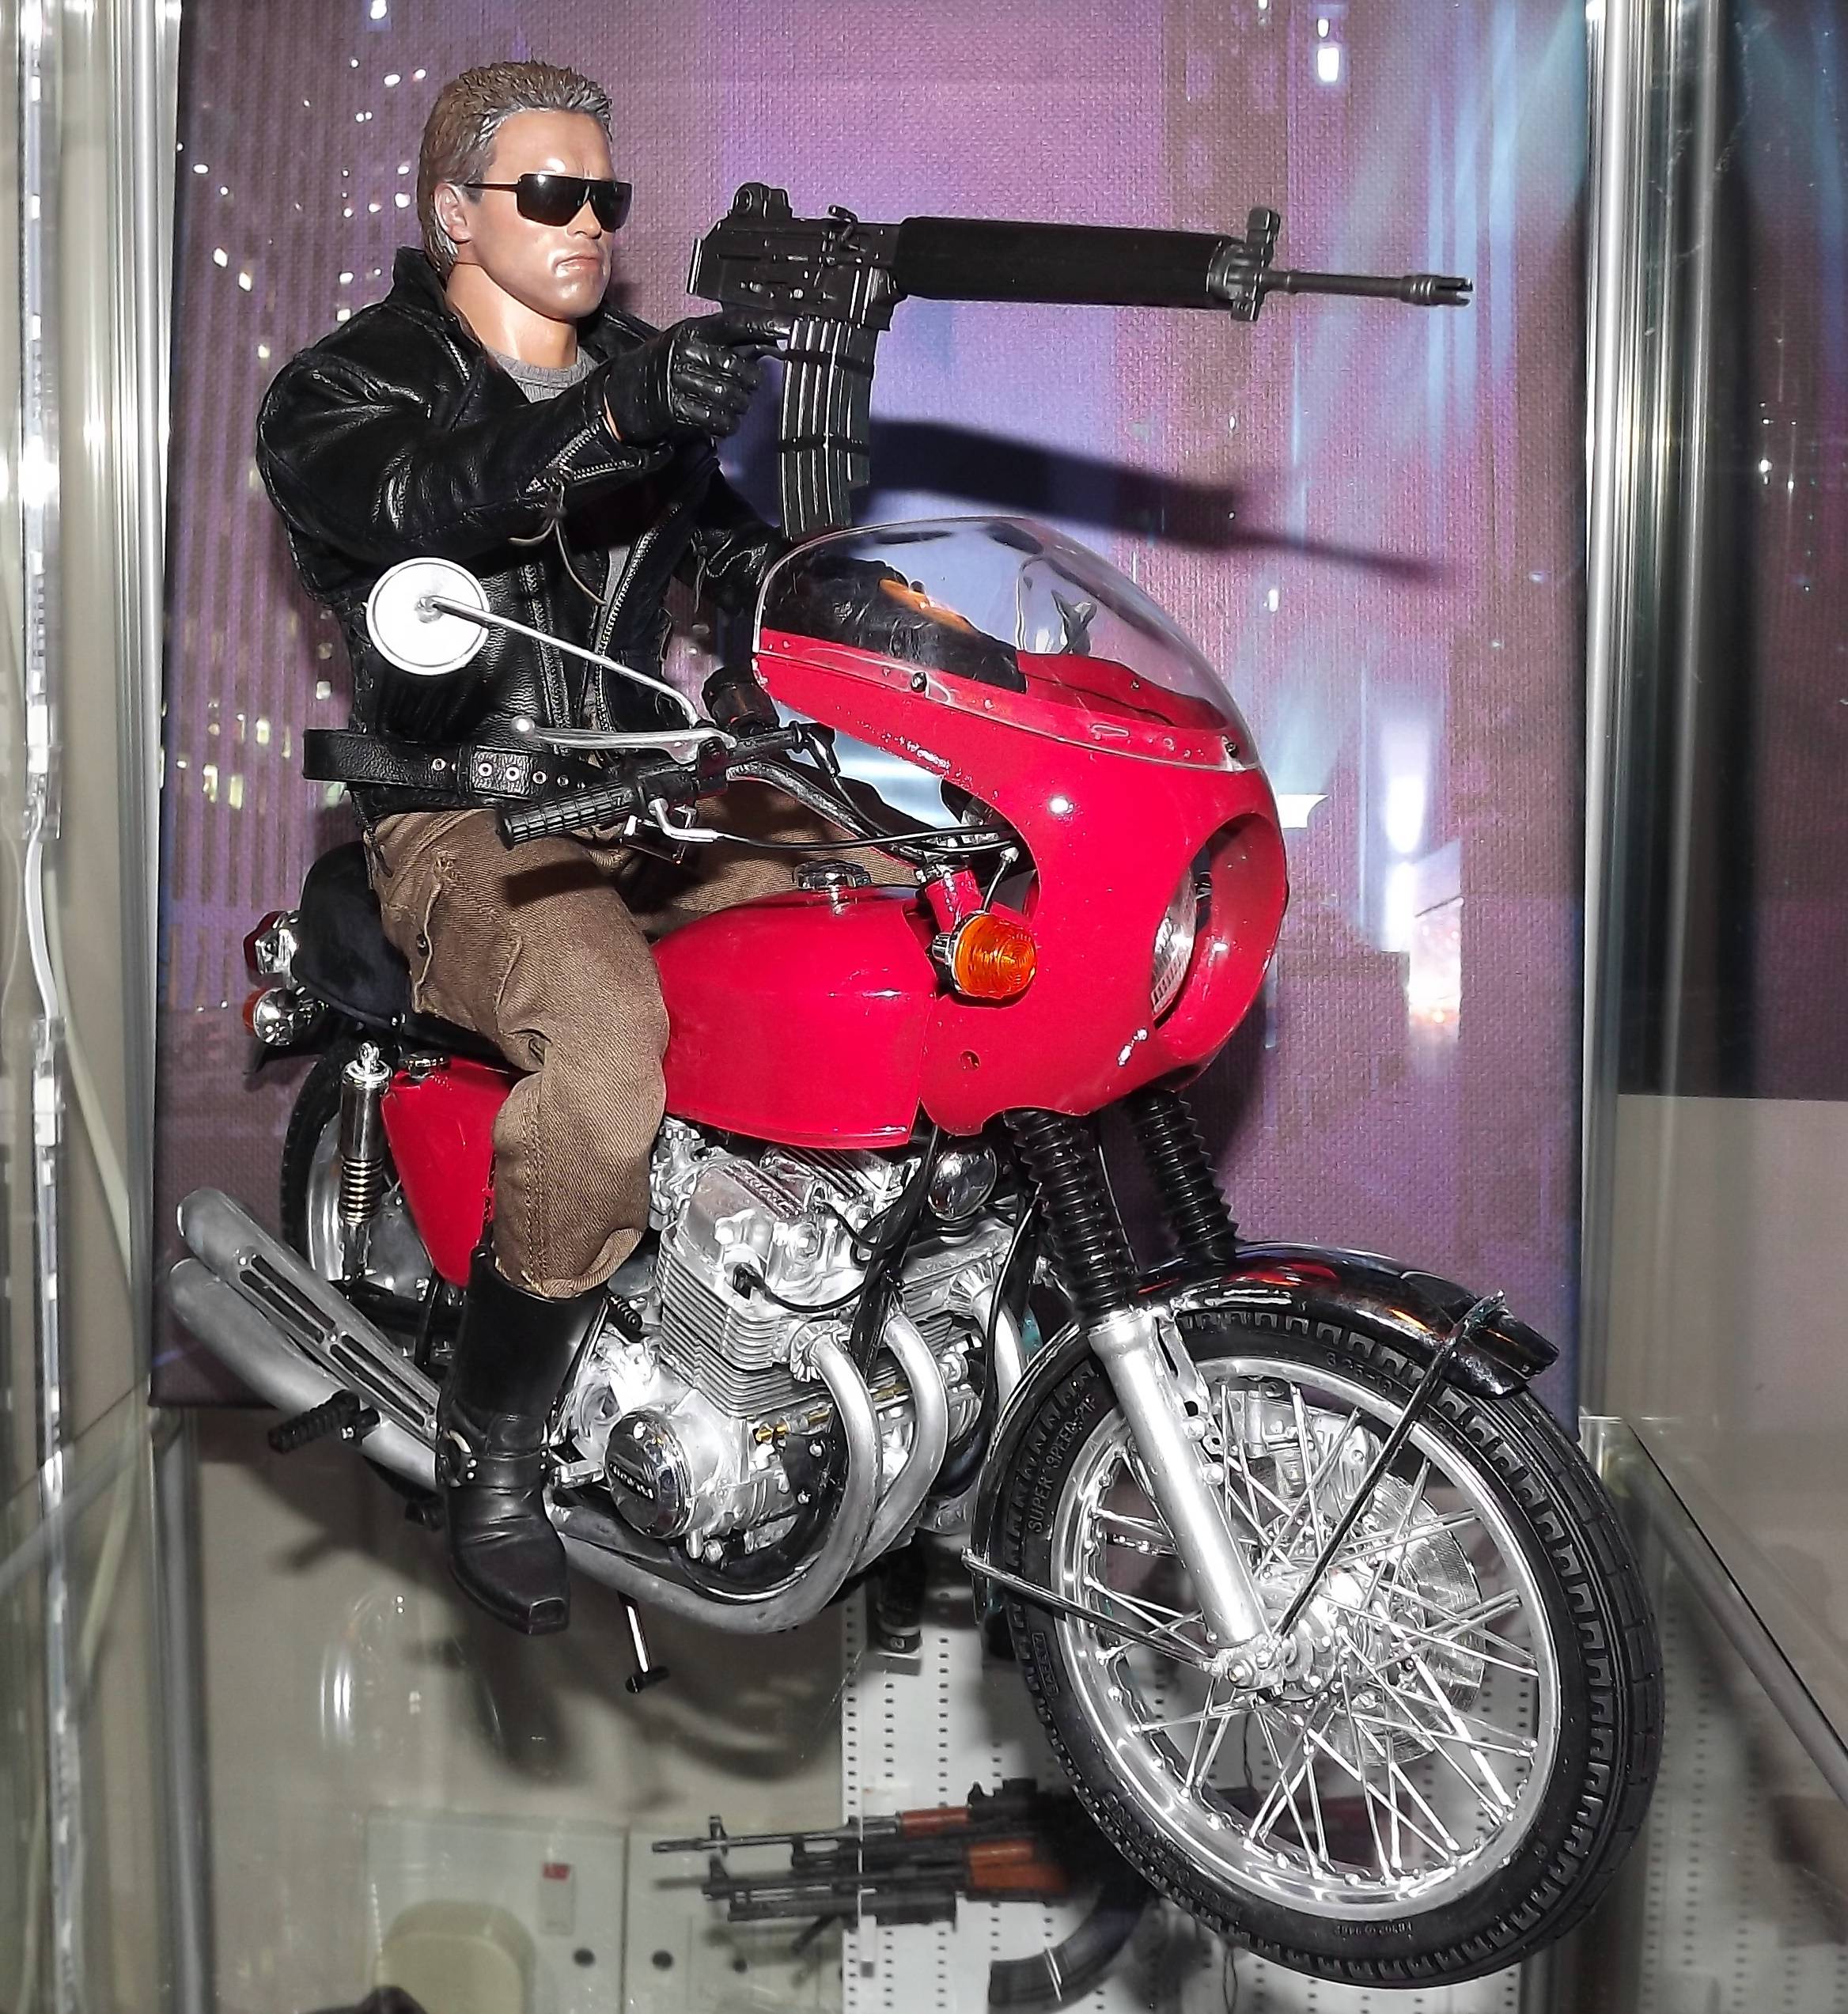 Honda CB750 fire model legetøj fra den første Terminator film